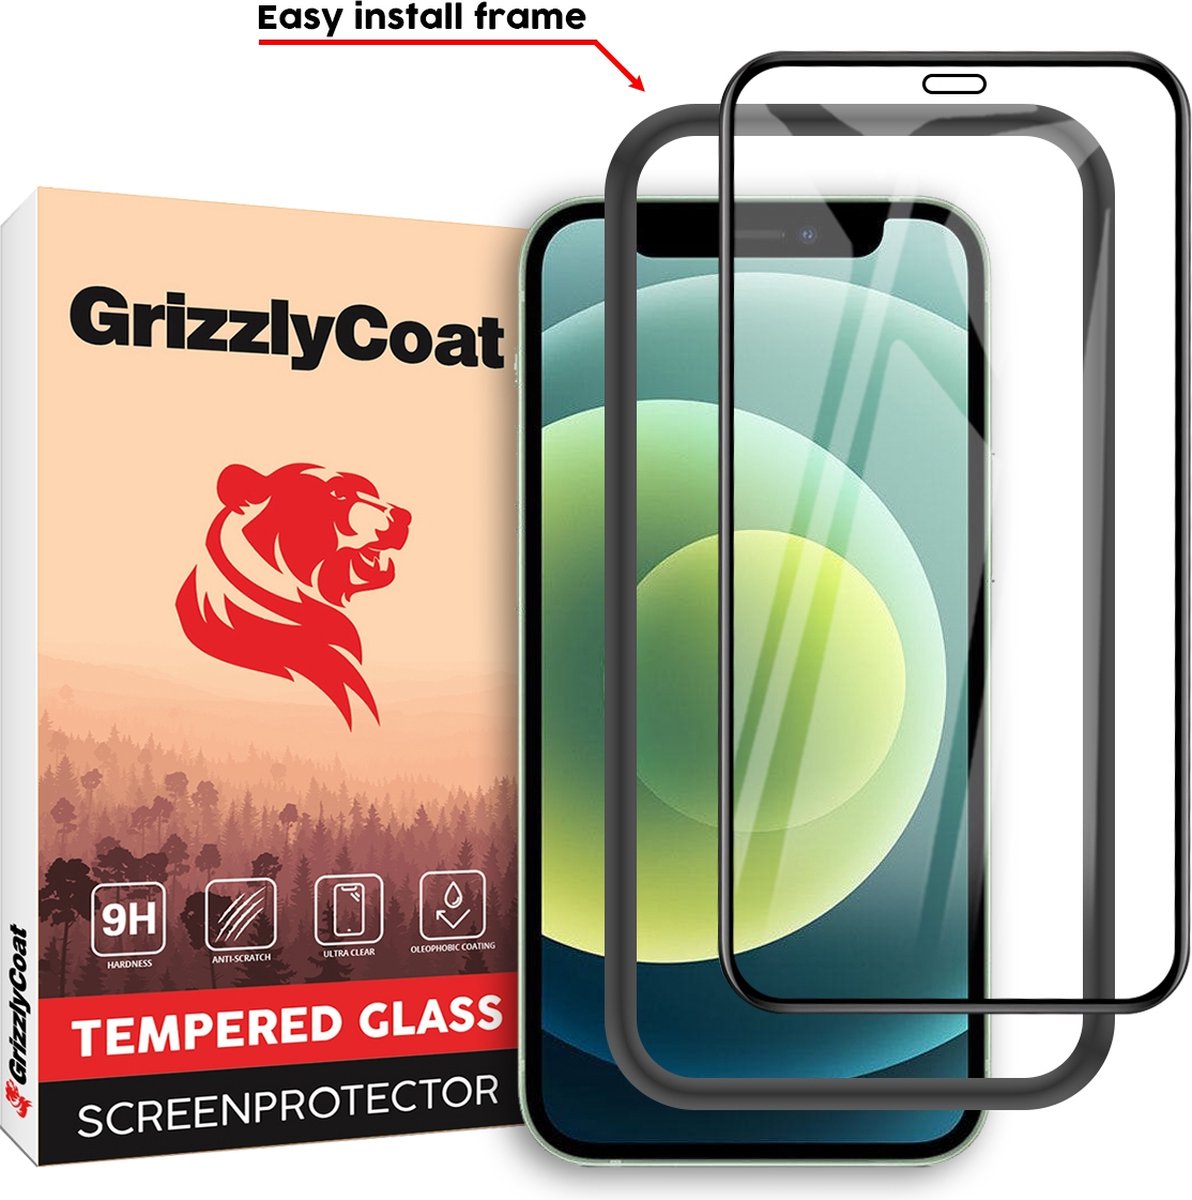 GrizzlyCoat Easy Fit Screenprotector geschikt voor Apple iPhone 12 Mini Glazen Screenprotector - Case Friendly + Installatie Frame - Zwart